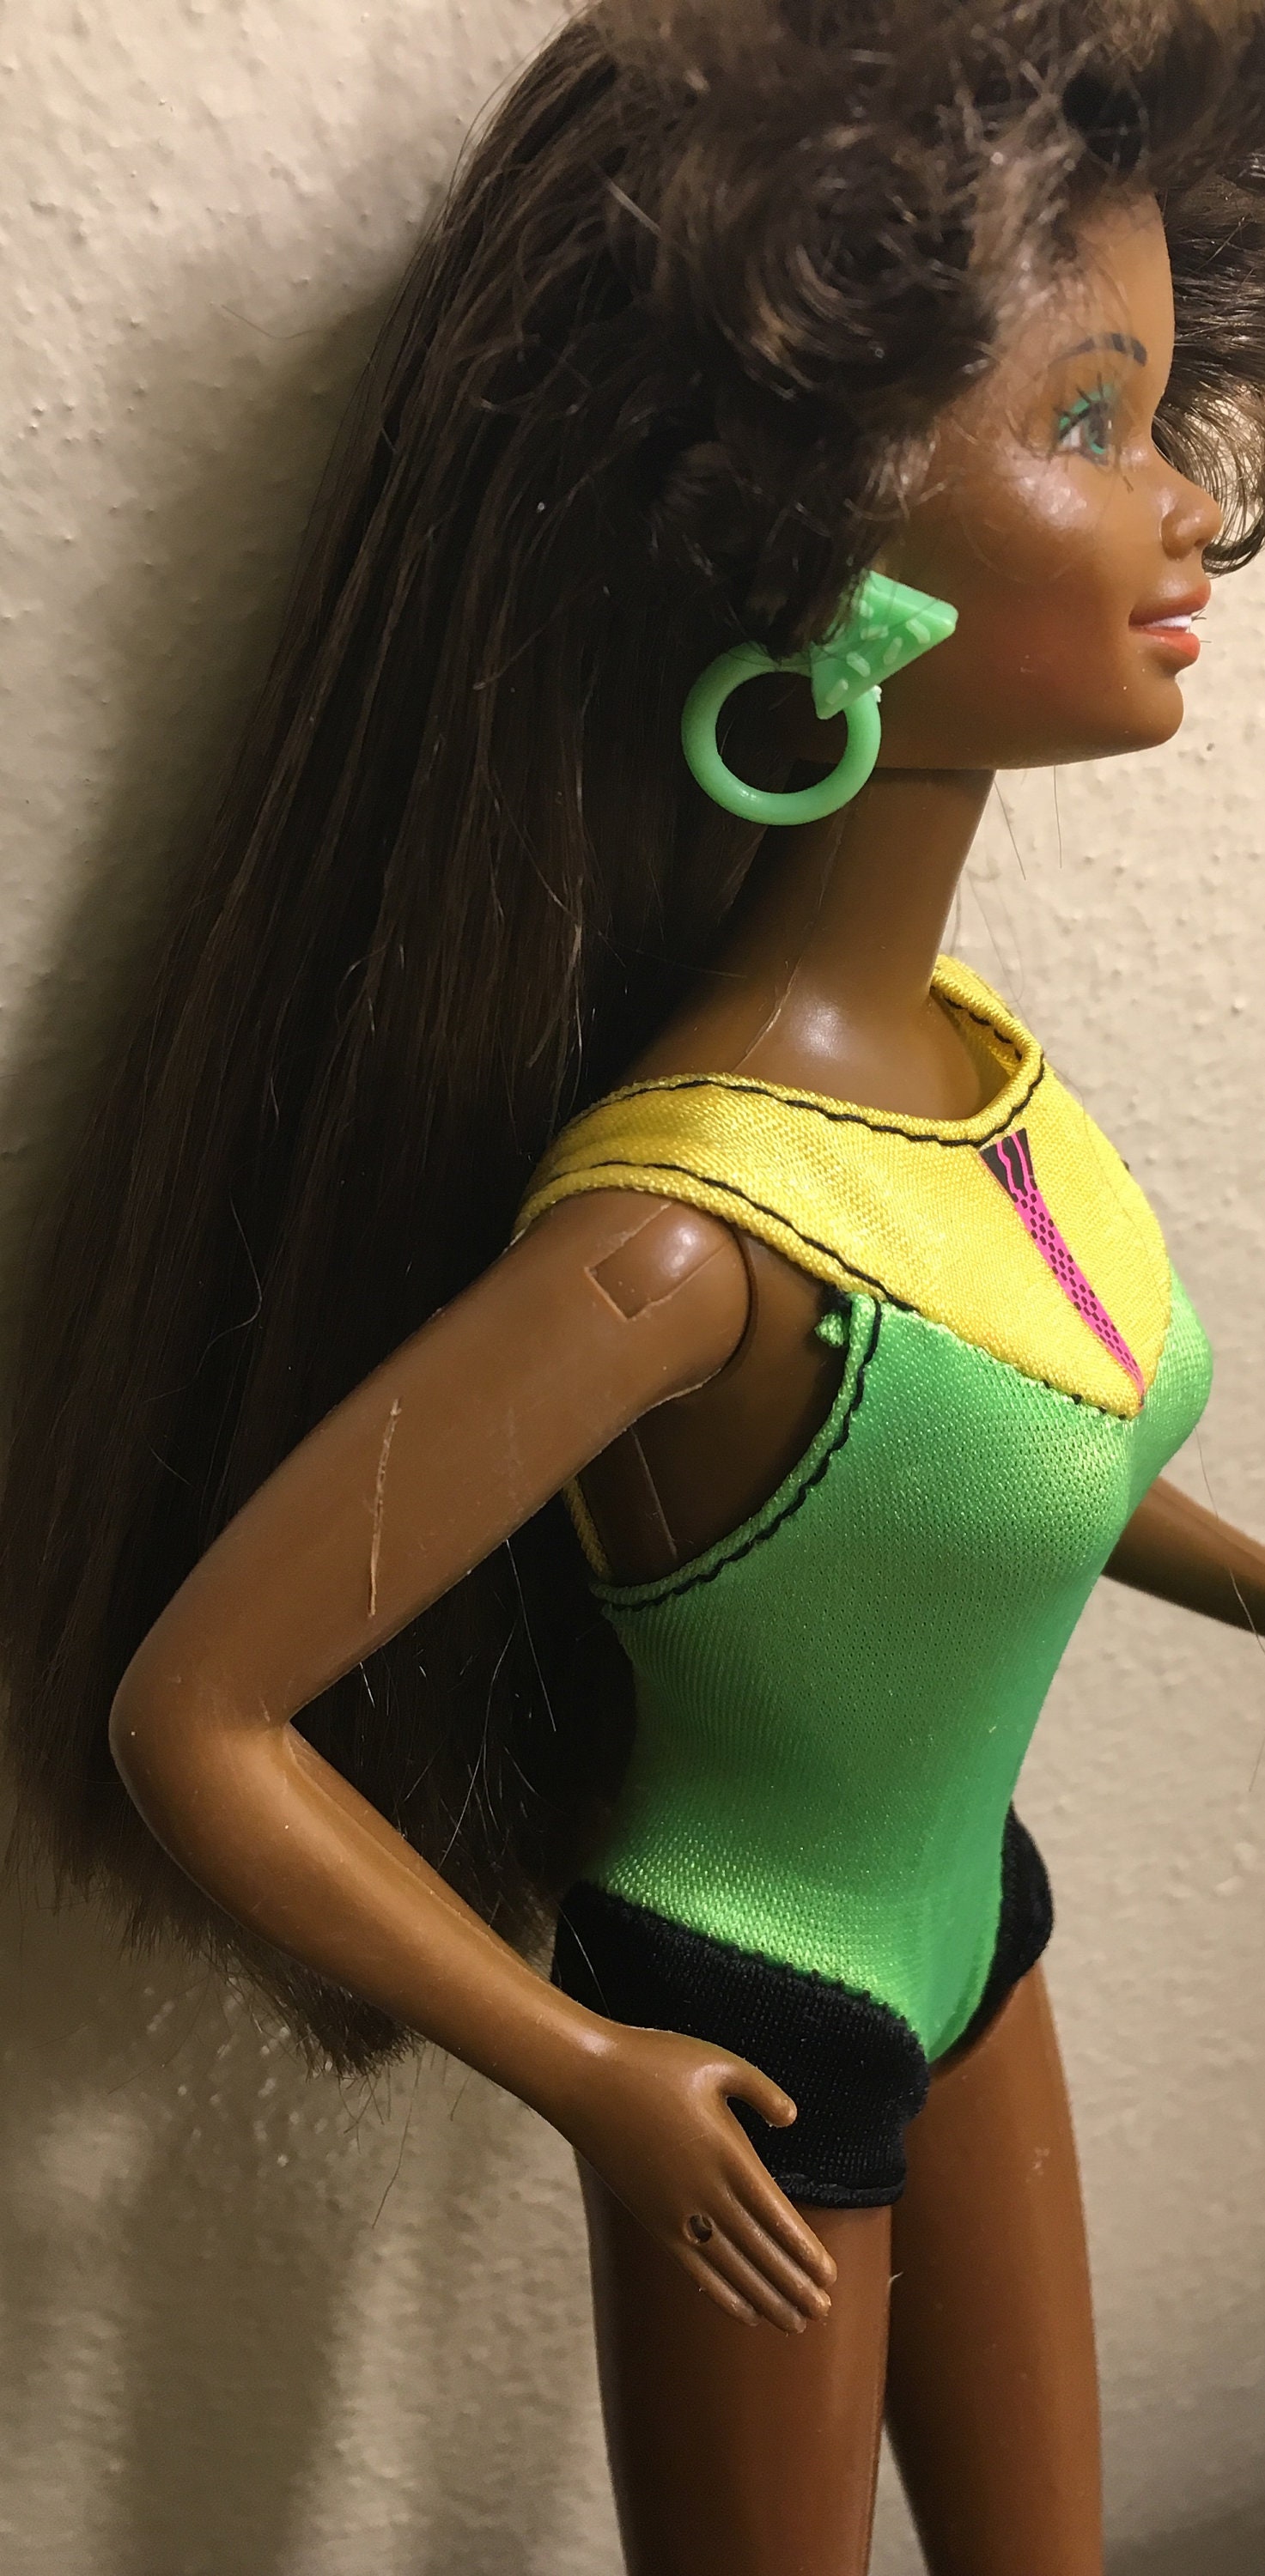 Rare Barbie afro-américaine des années 1980 : cheveux bouclés